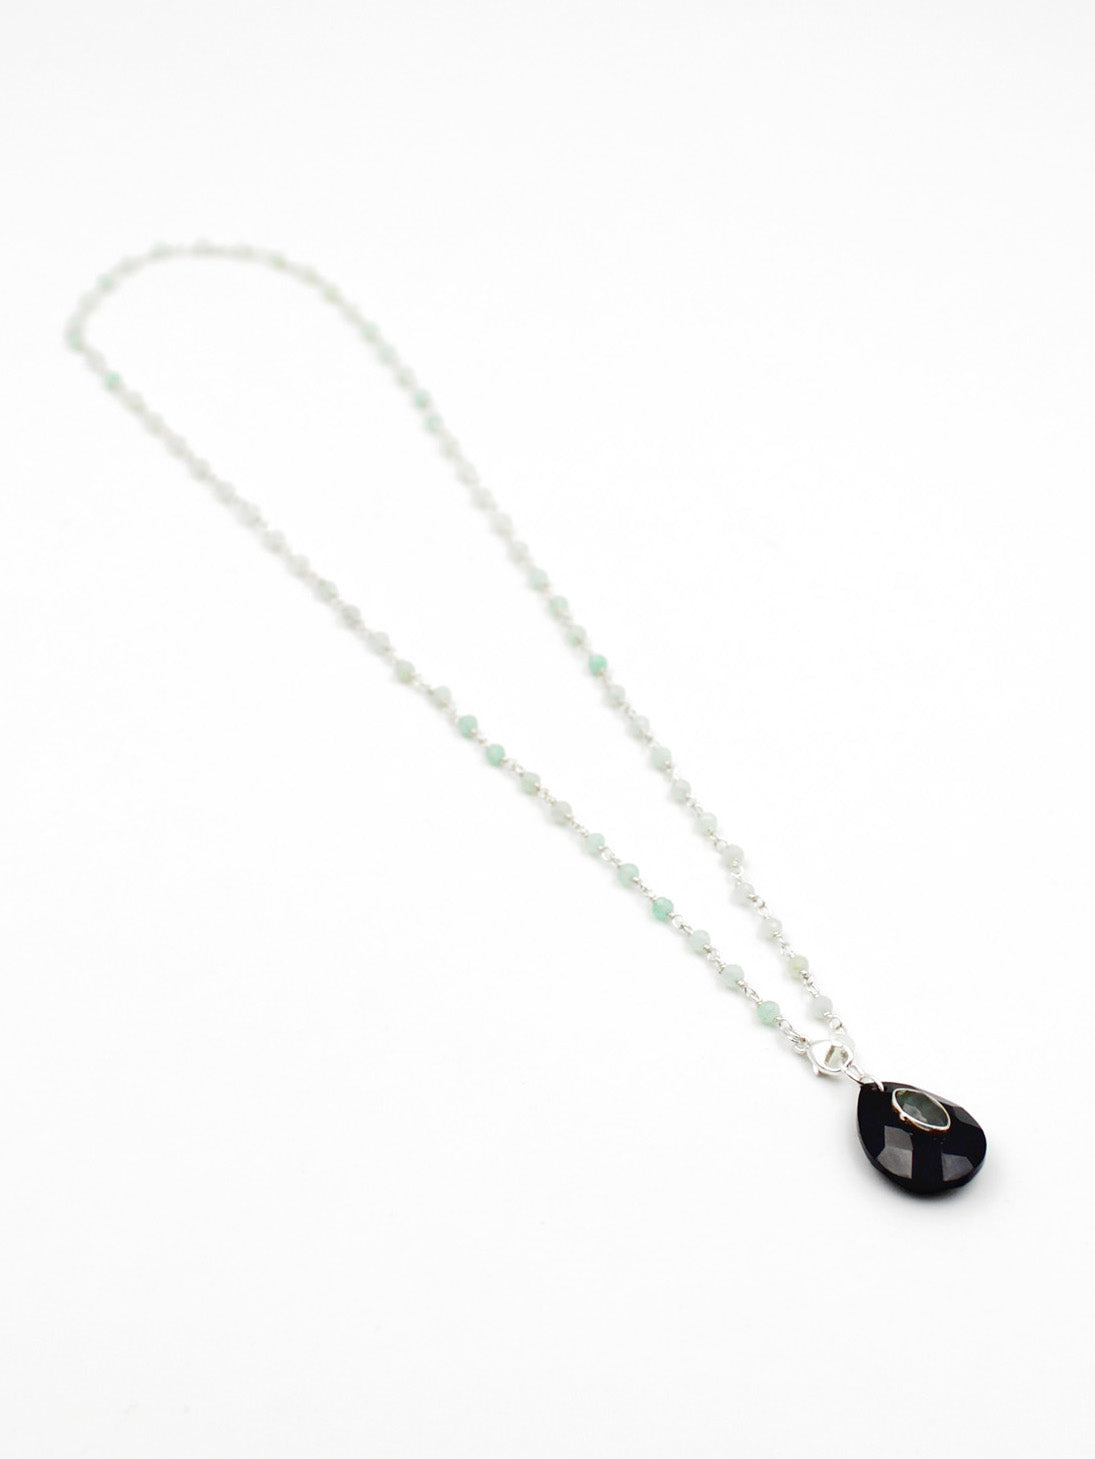 Collier perles et goutte - gamme LOUISE - argent 925 - pierres naturelles : chrysoprase, onyx noir, labradorite - nouvelle collection 23FW - l’Atelier des Dames